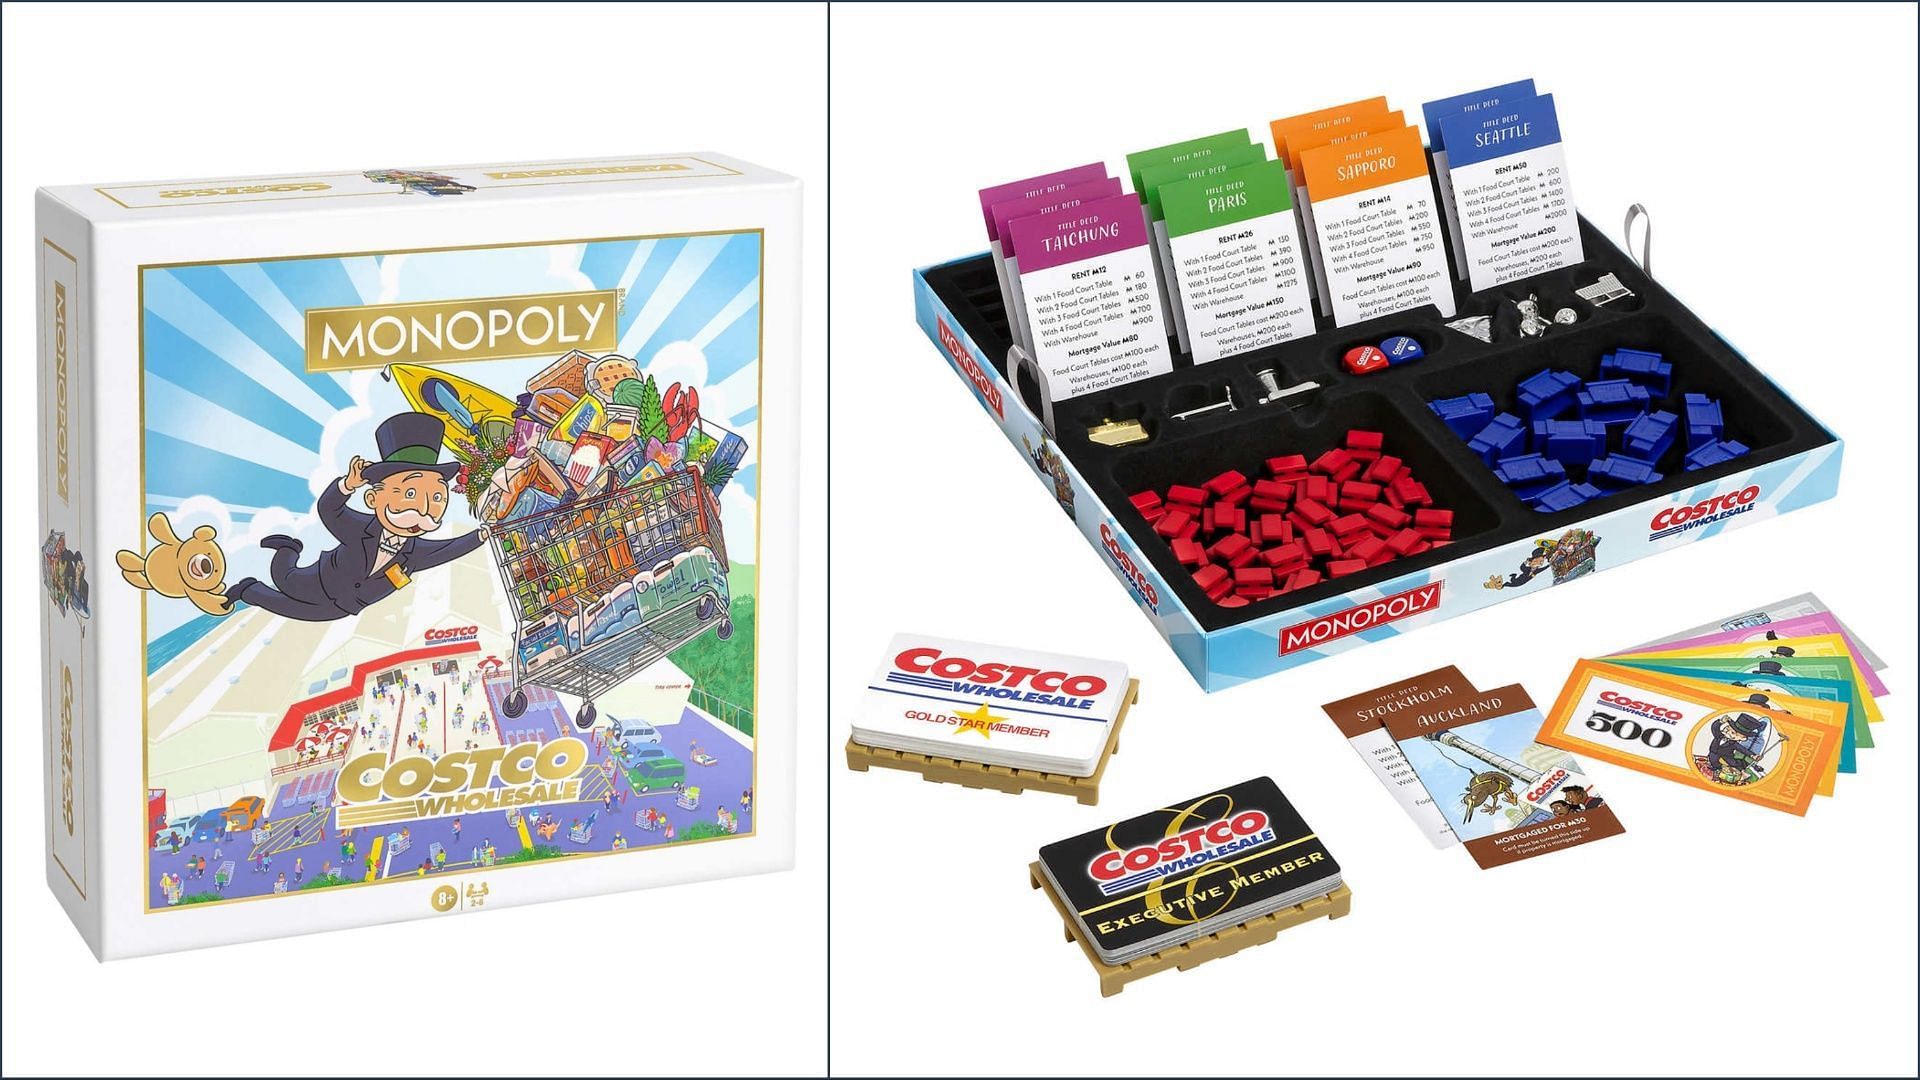 Costco Monopoly Game sets come for over $44.99 (Image via Costco / Hasbro Games)